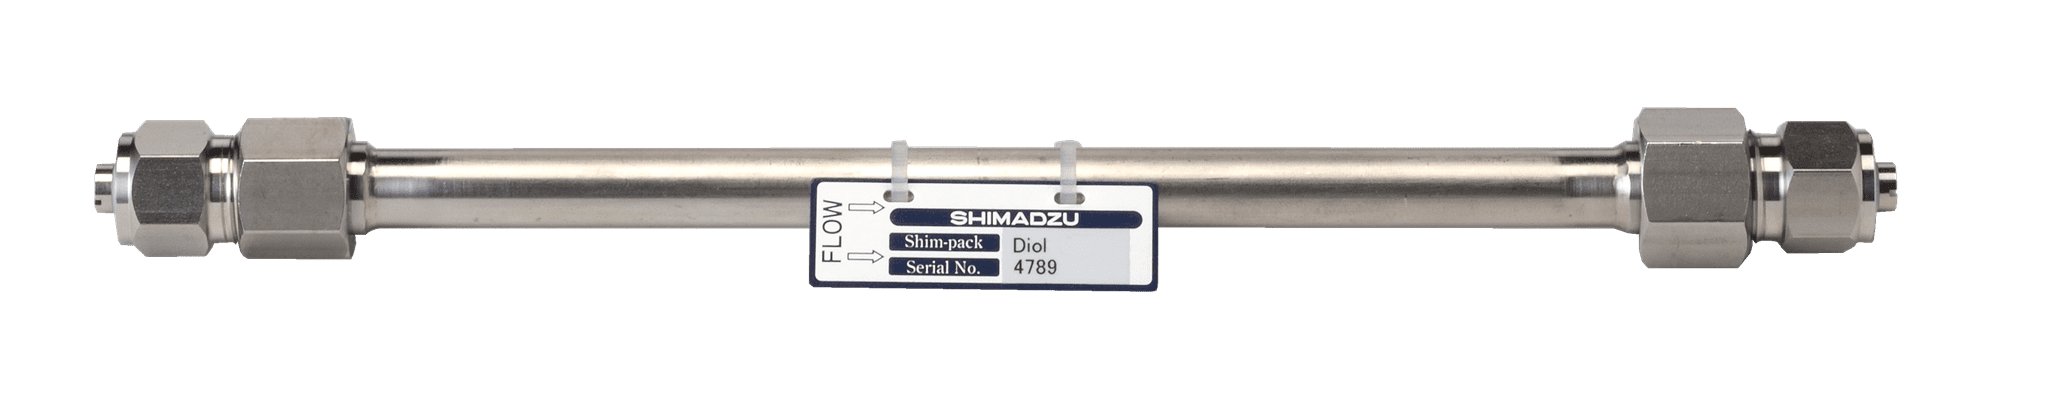 Afbeelding van Shim-pack Diol-150; 5 µm; 500 x 7.9